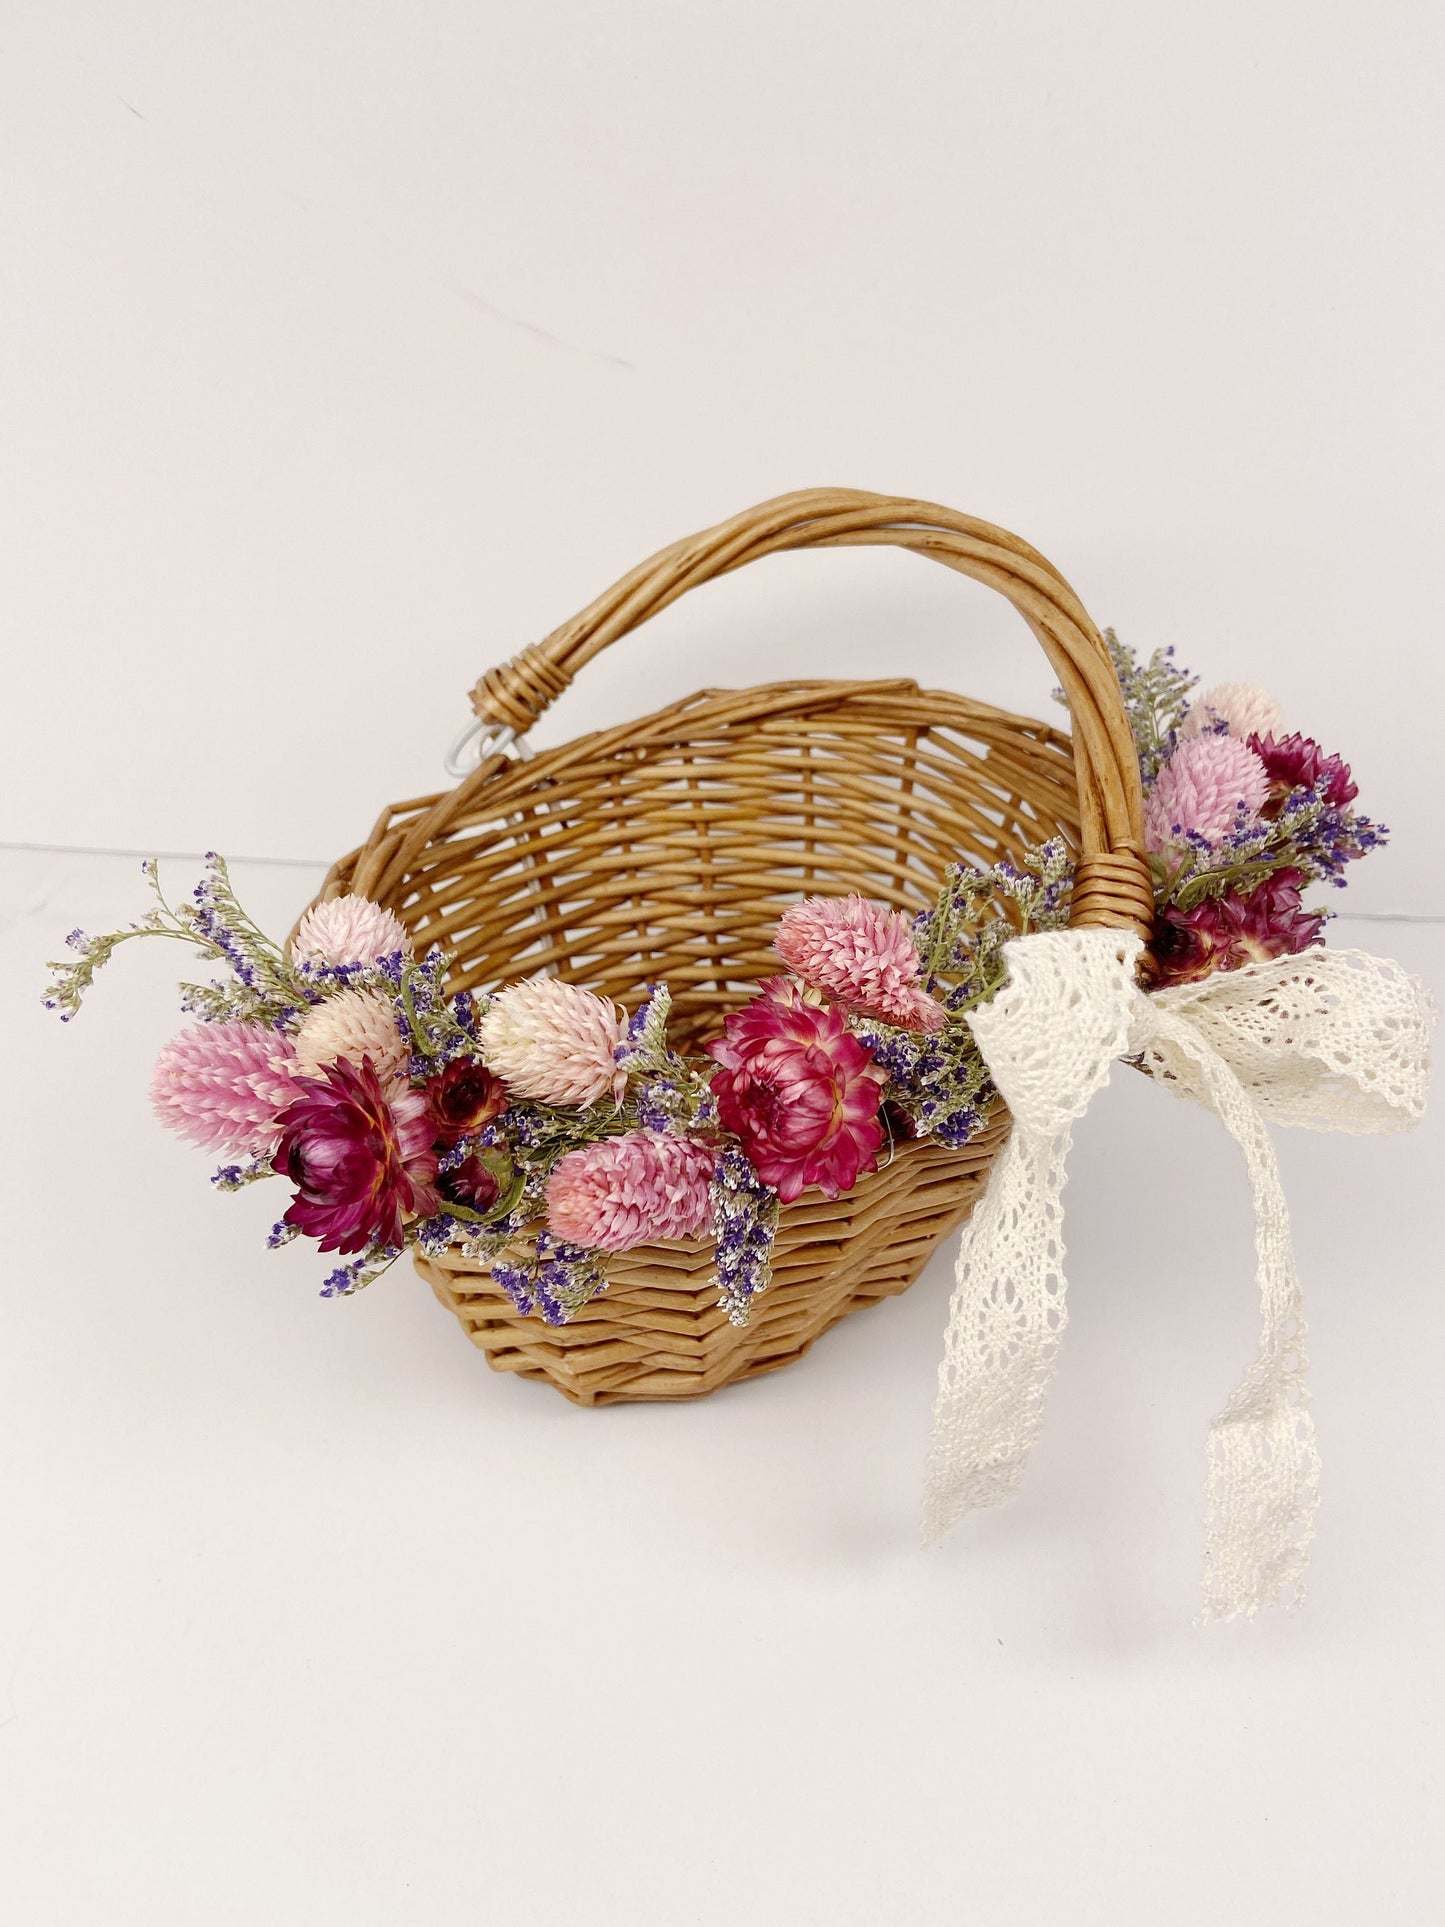 Flower Girl Basket, Wedding Basket, Wooden, Rose Petals, Dried Flowers, Preserved, Aisle Runner, Decorated Basket, Details, Floral, Bridal